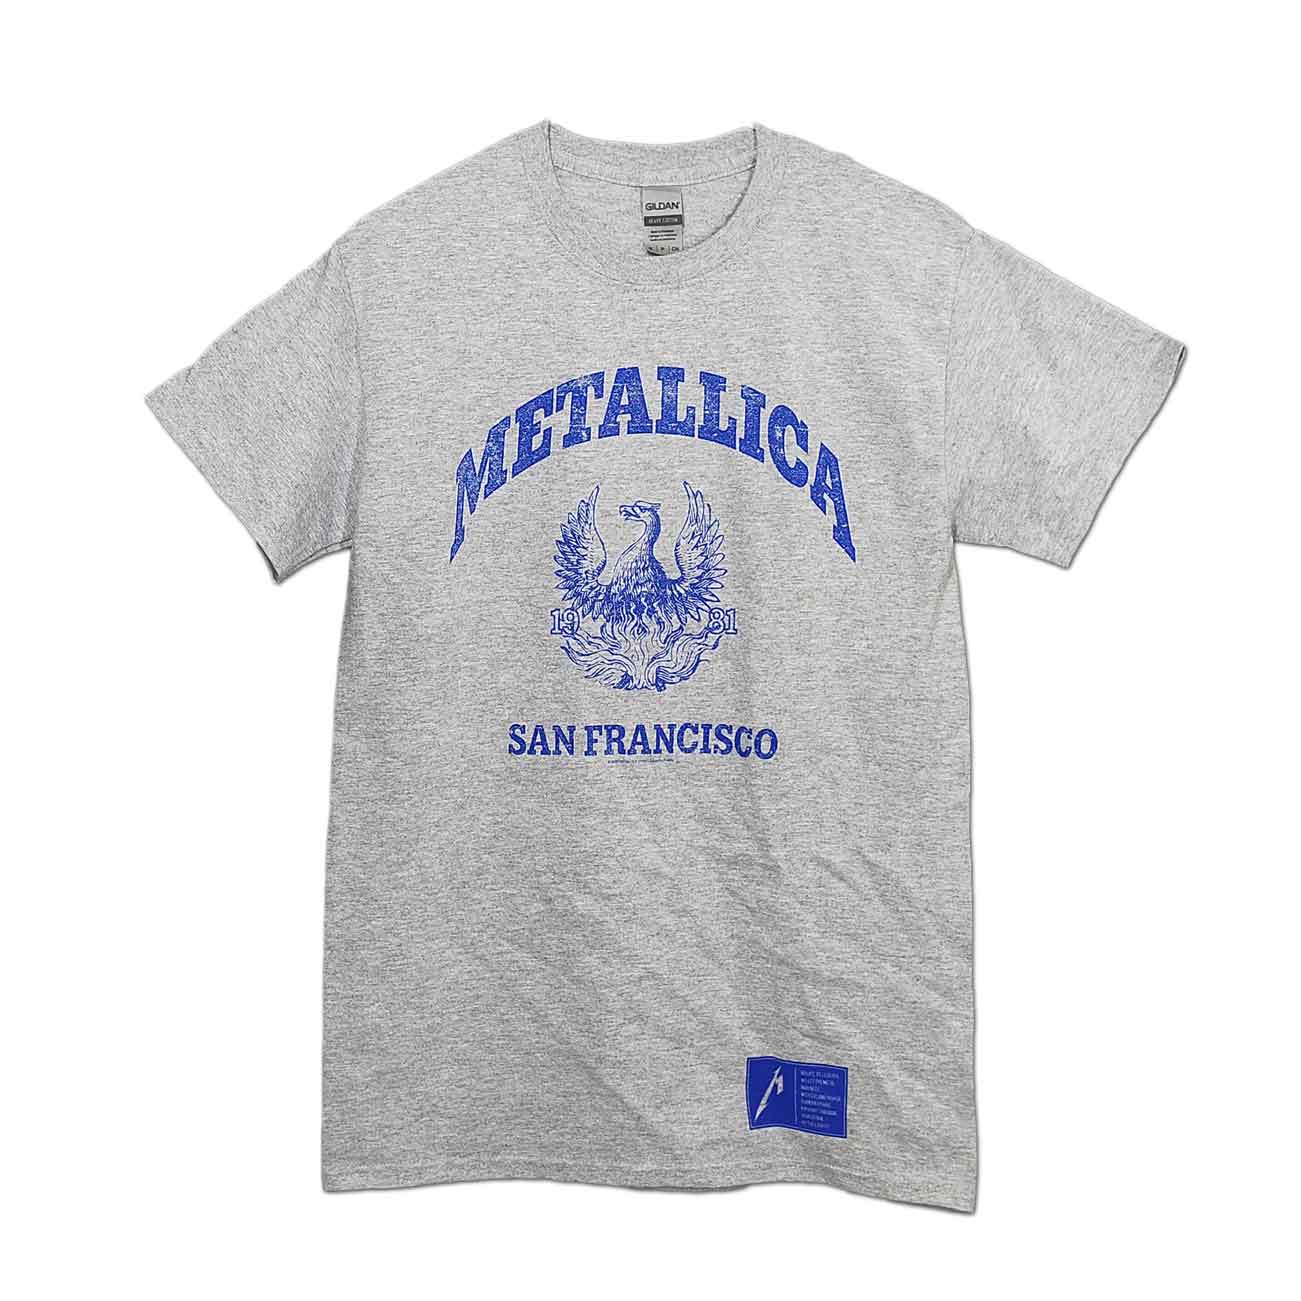 新しいコレクション METALLICA メタリカ バンドtシャツ - トップス